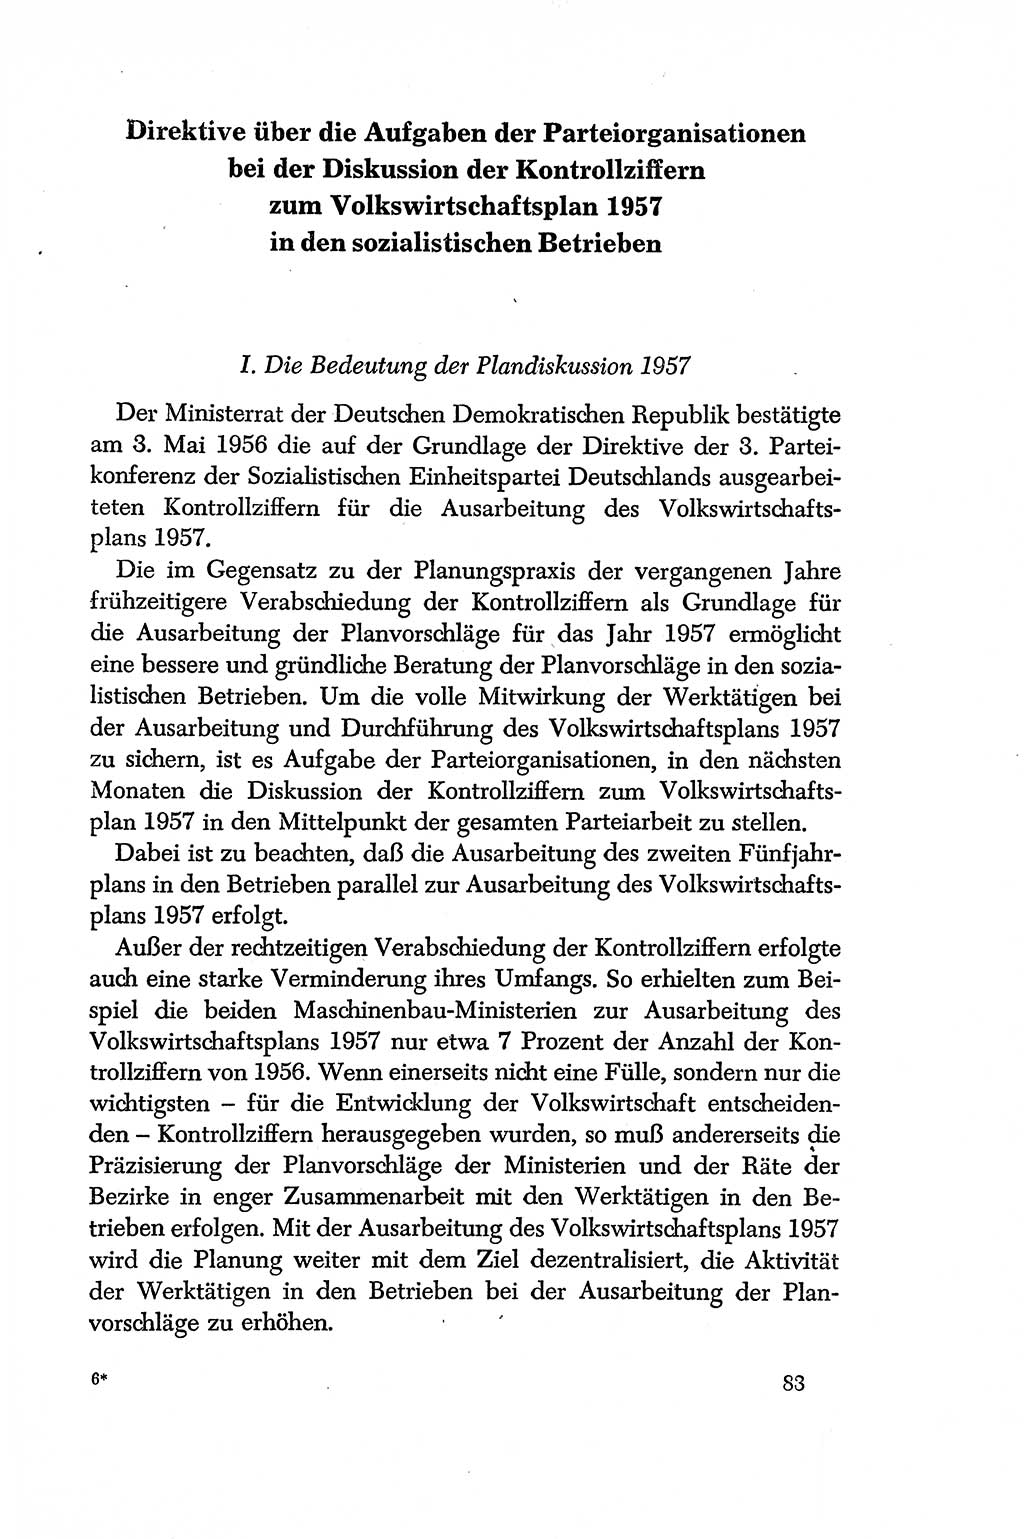 Dokumente der Sozialistischen Einheitspartei Deutschlands (SED) [Deutsche Demokratische Republik (DDR)] 1956-1957, Seite 83 (Dok. SED DDR 1956-1957, S. 83)